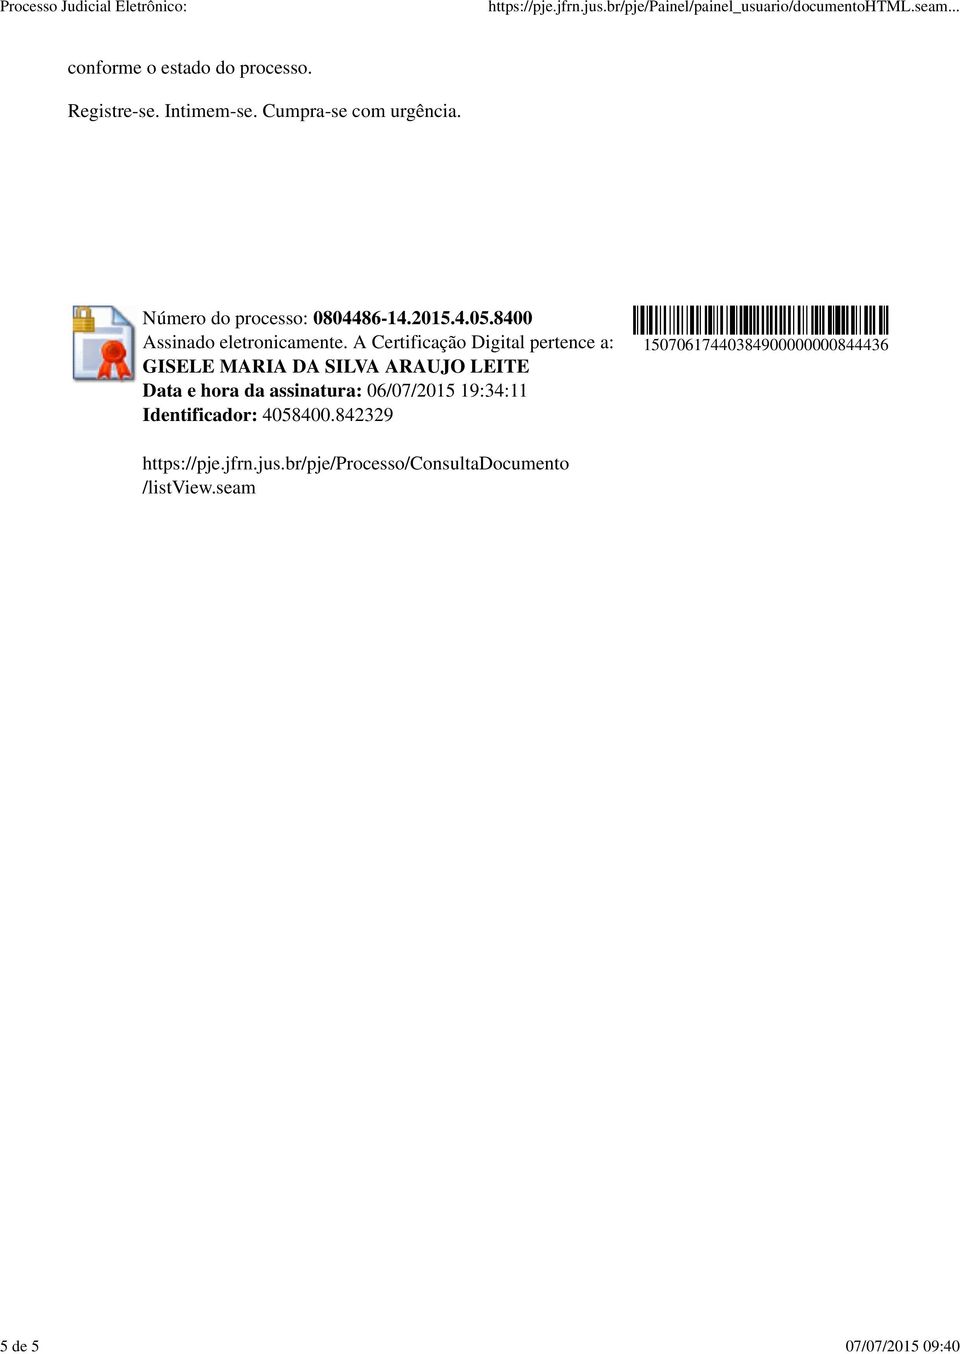 A Certificação Digital pertence a: GISELE MARIA DA SILVA ARAUJO LEITE Data e hora da assinatura: 06/07/2015